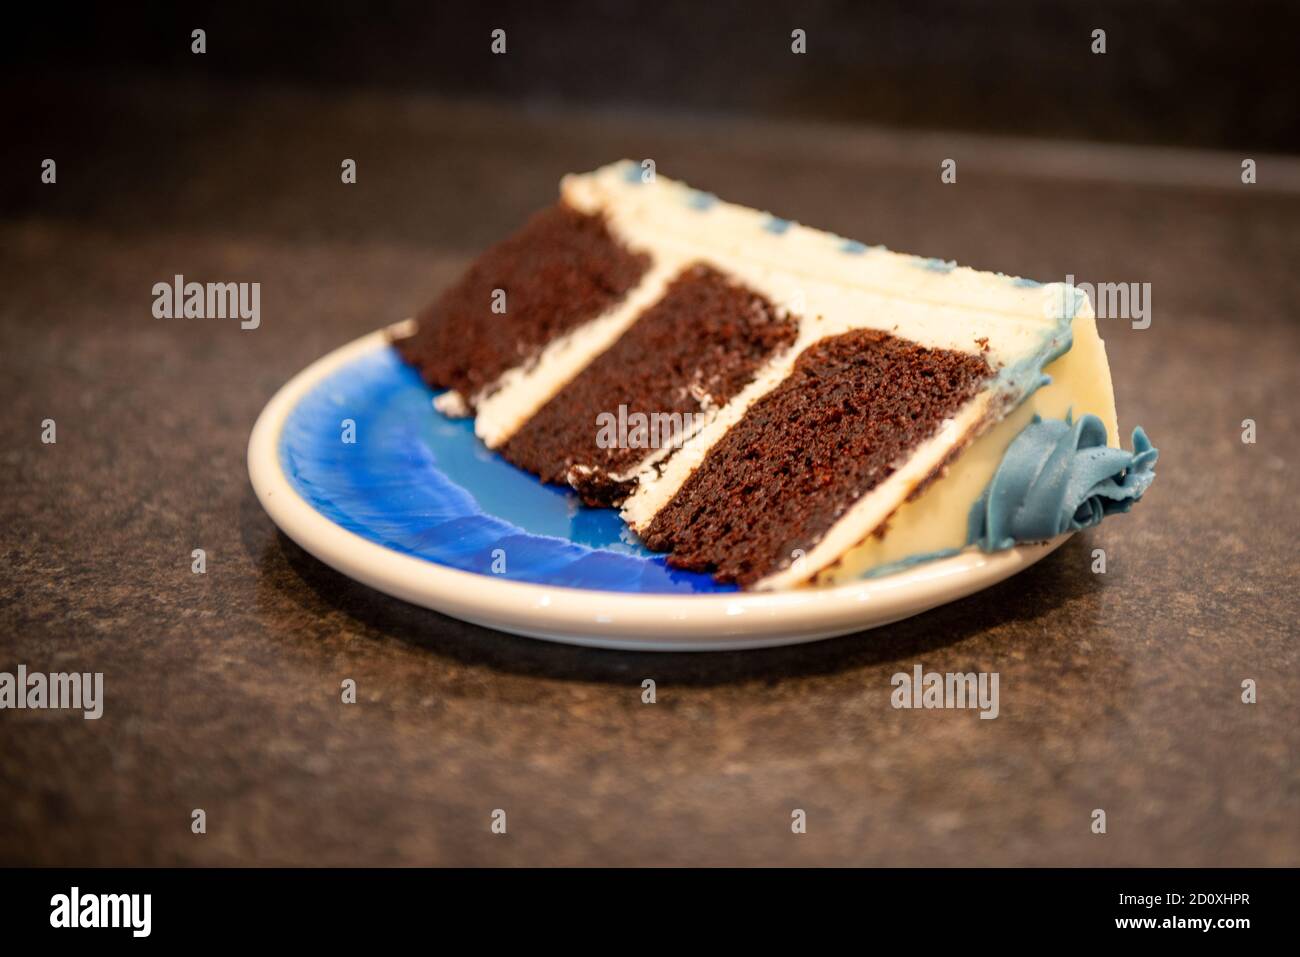 Eine reichhaltige, feuchte Schokoladencreme, dreilagige Torte mit dicker Vanillevereisung und graublau gefärbten Buttercreme-Rosetten. Stockfoto